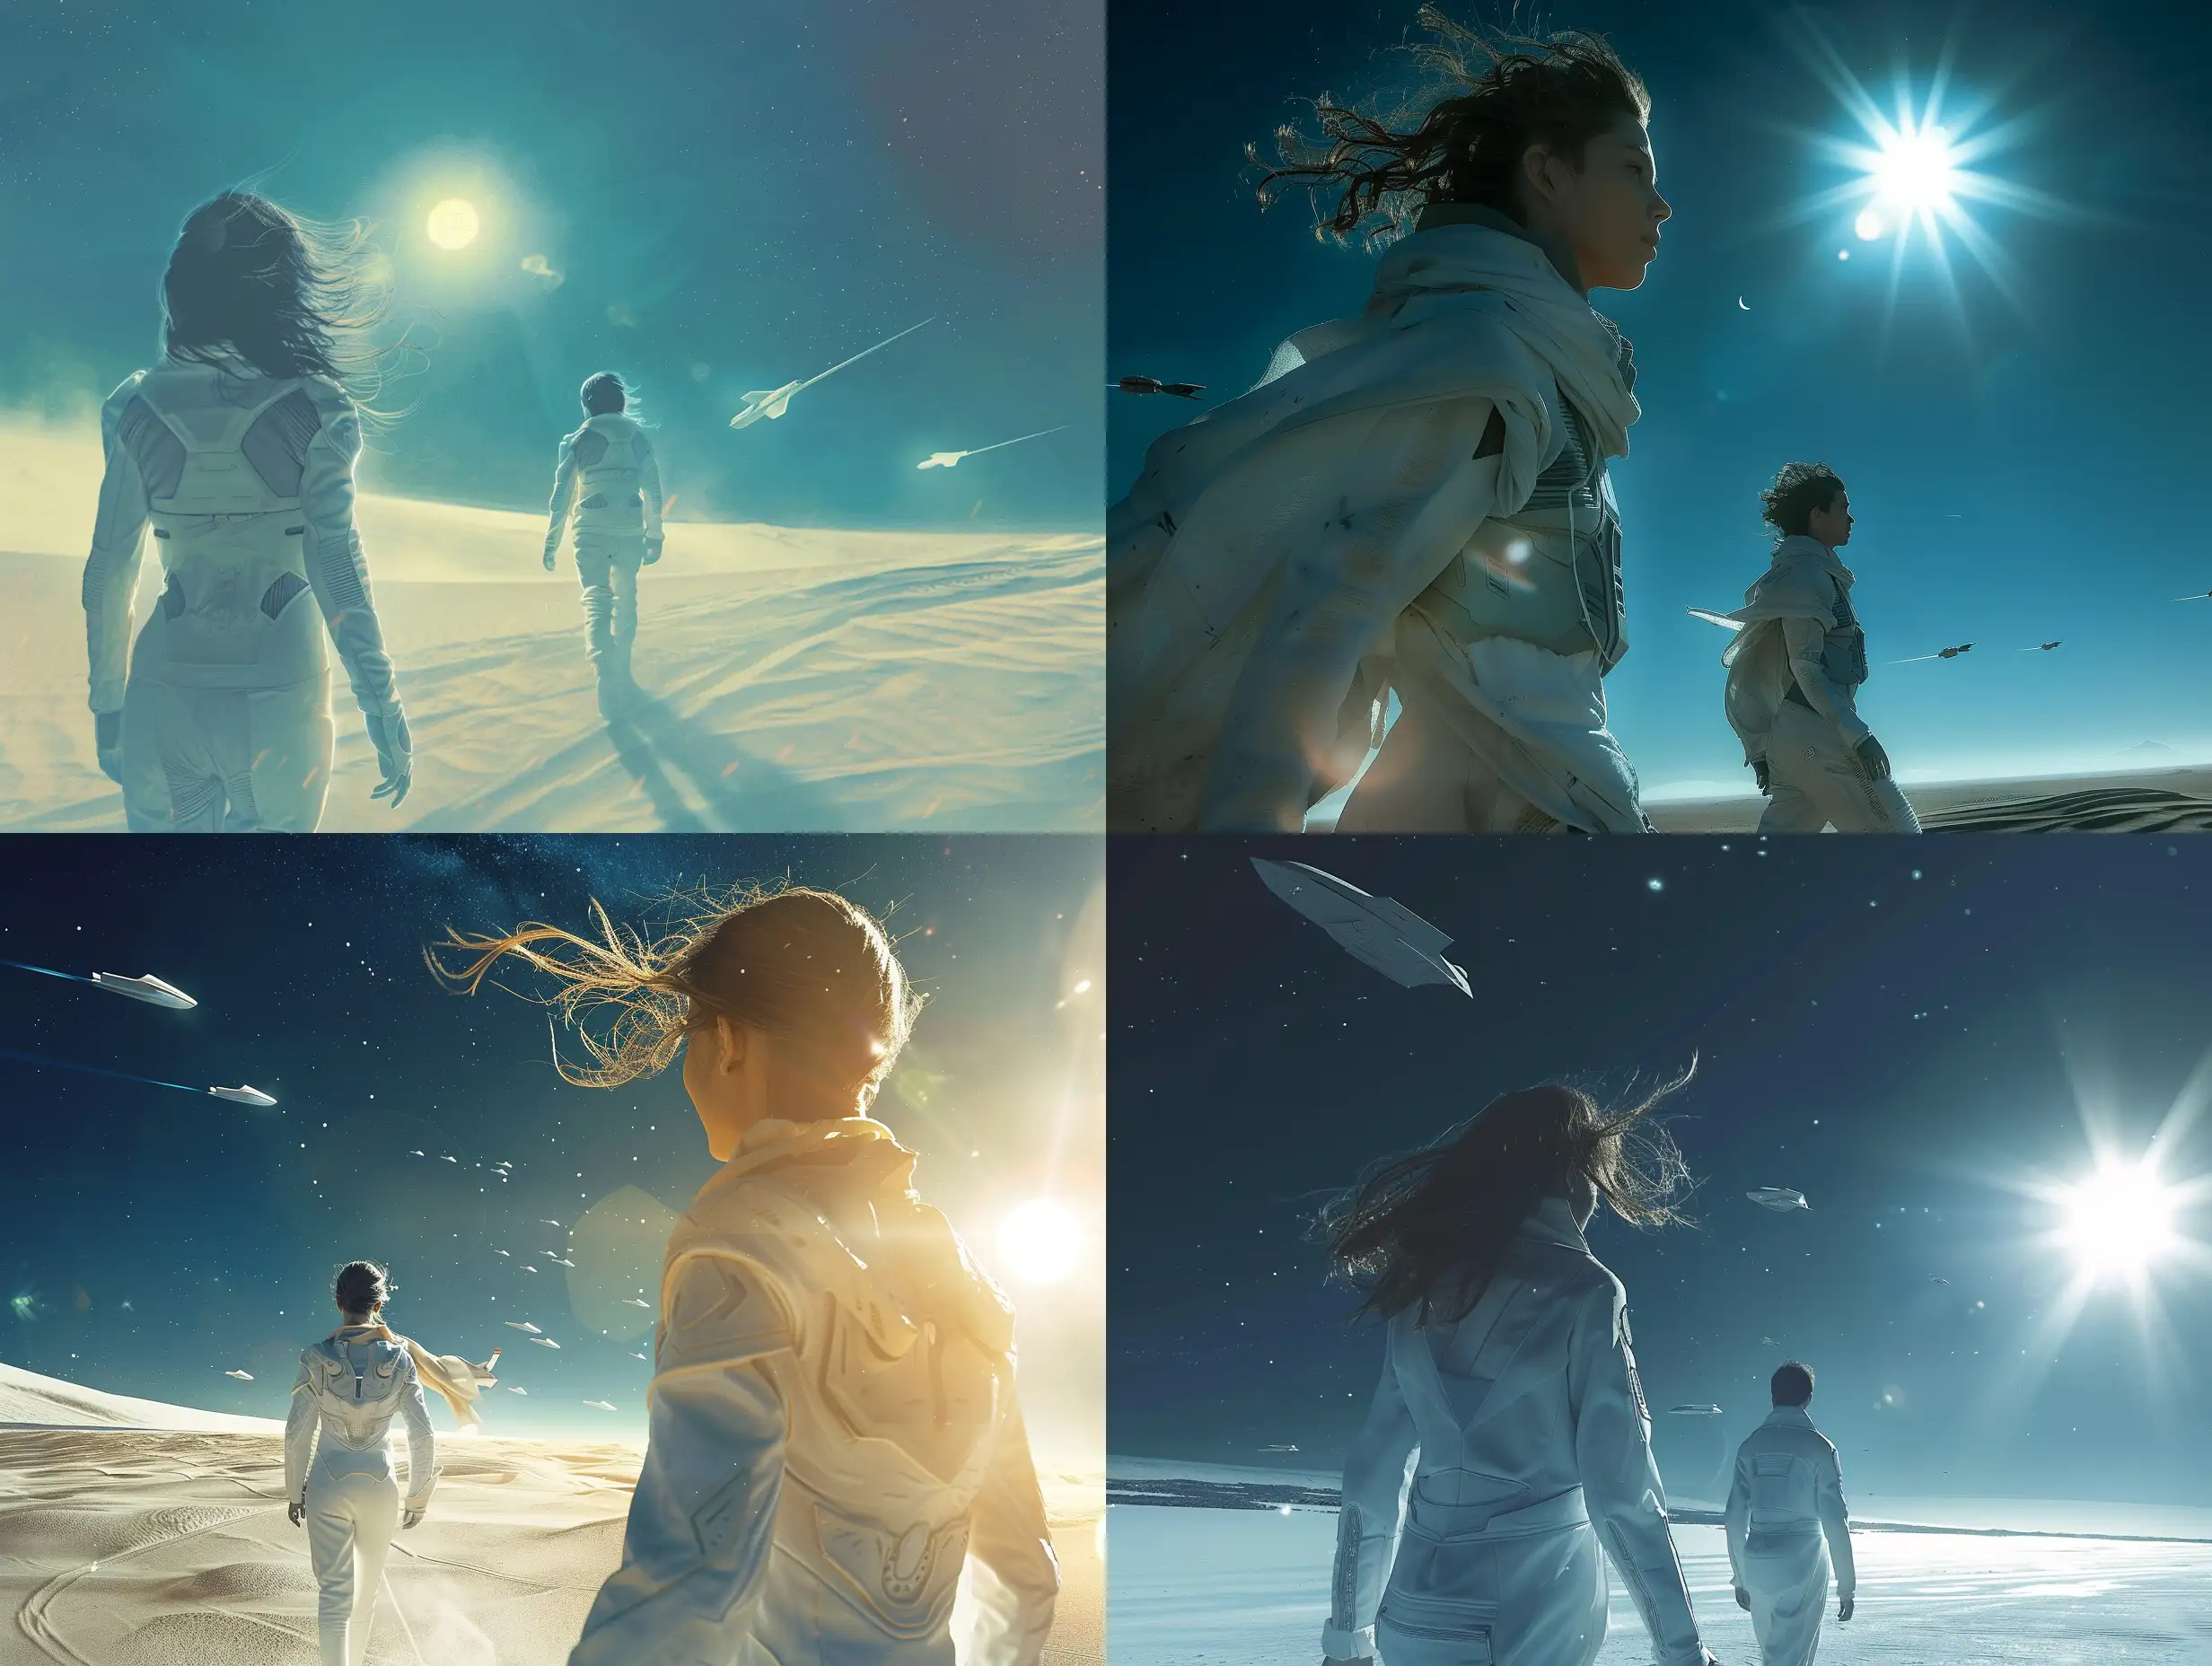 Фантастическая планета в стилистике фильма Дюна, девушка и мужчина  идут к горизонту  на встречу солнцу,  они в белых космических костюмах, ветер развевает волосы девушки, на темно-синем небе проплывают космические корабли, 8k, дымка, ультодетализация, плёночная фотография, рассеяние света,  резкий фокус, высокая детализация  